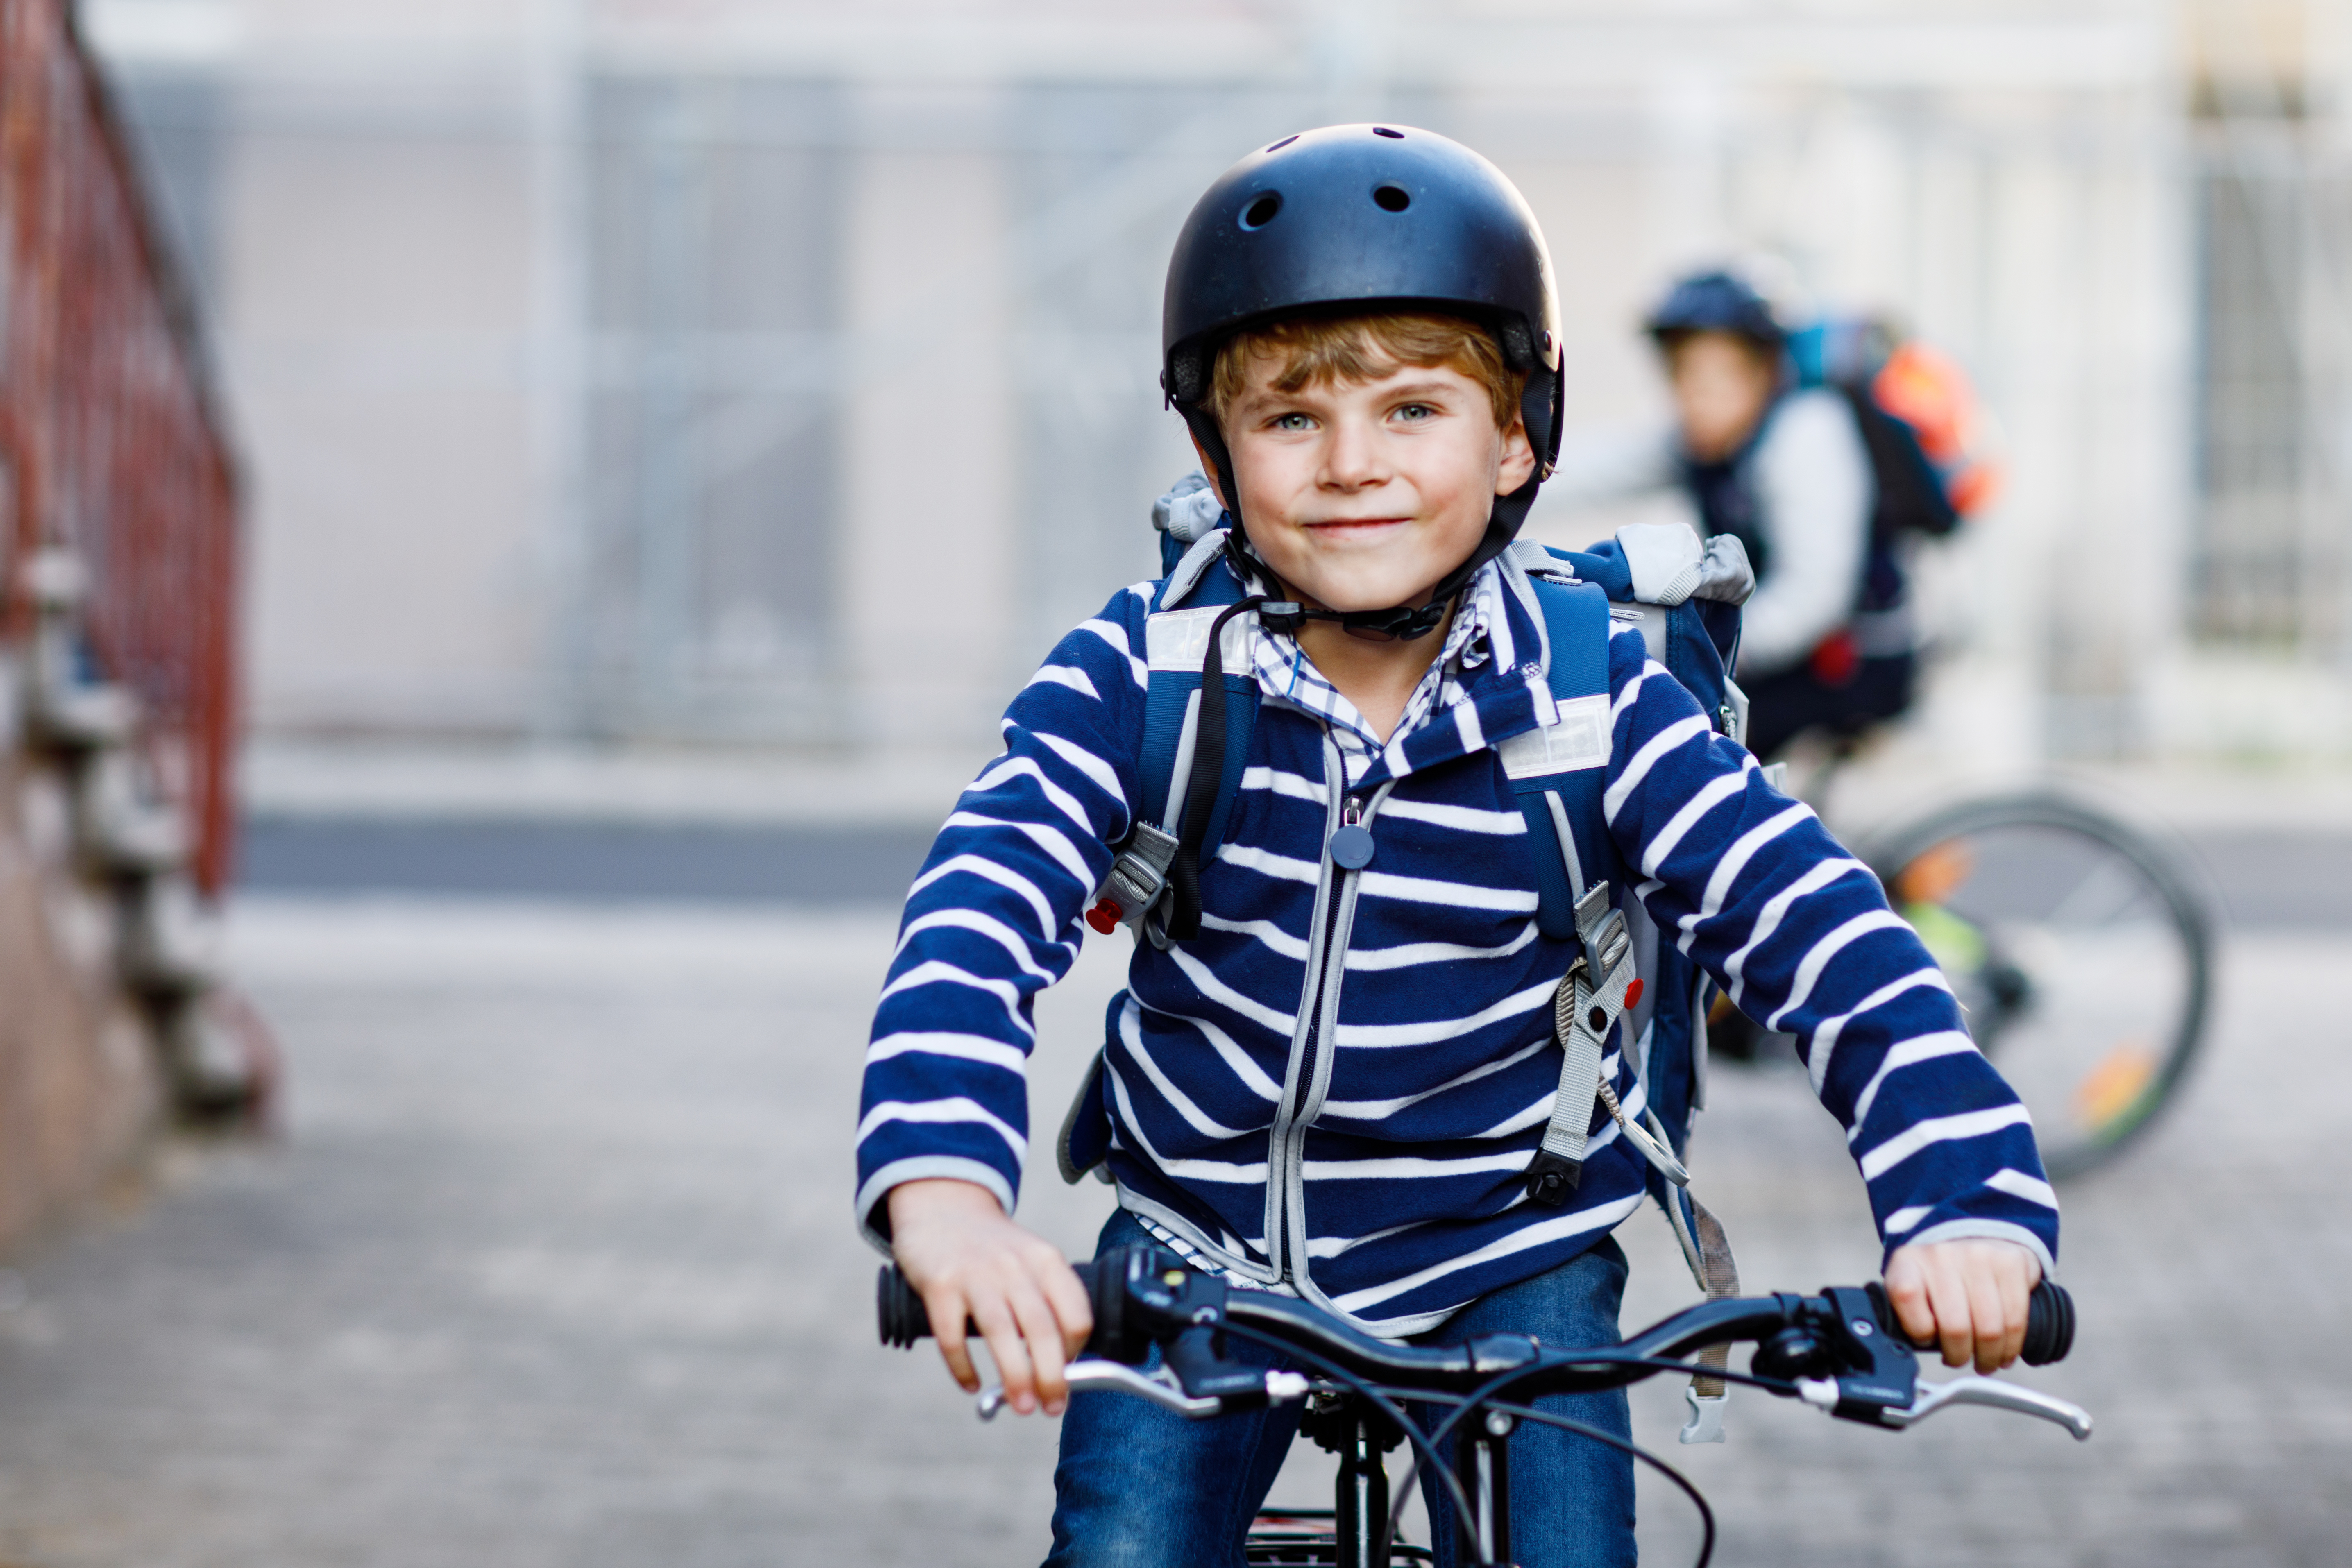 Pojke cyklar med cykelhjälm, någon cyklar bakom honom med hjälm